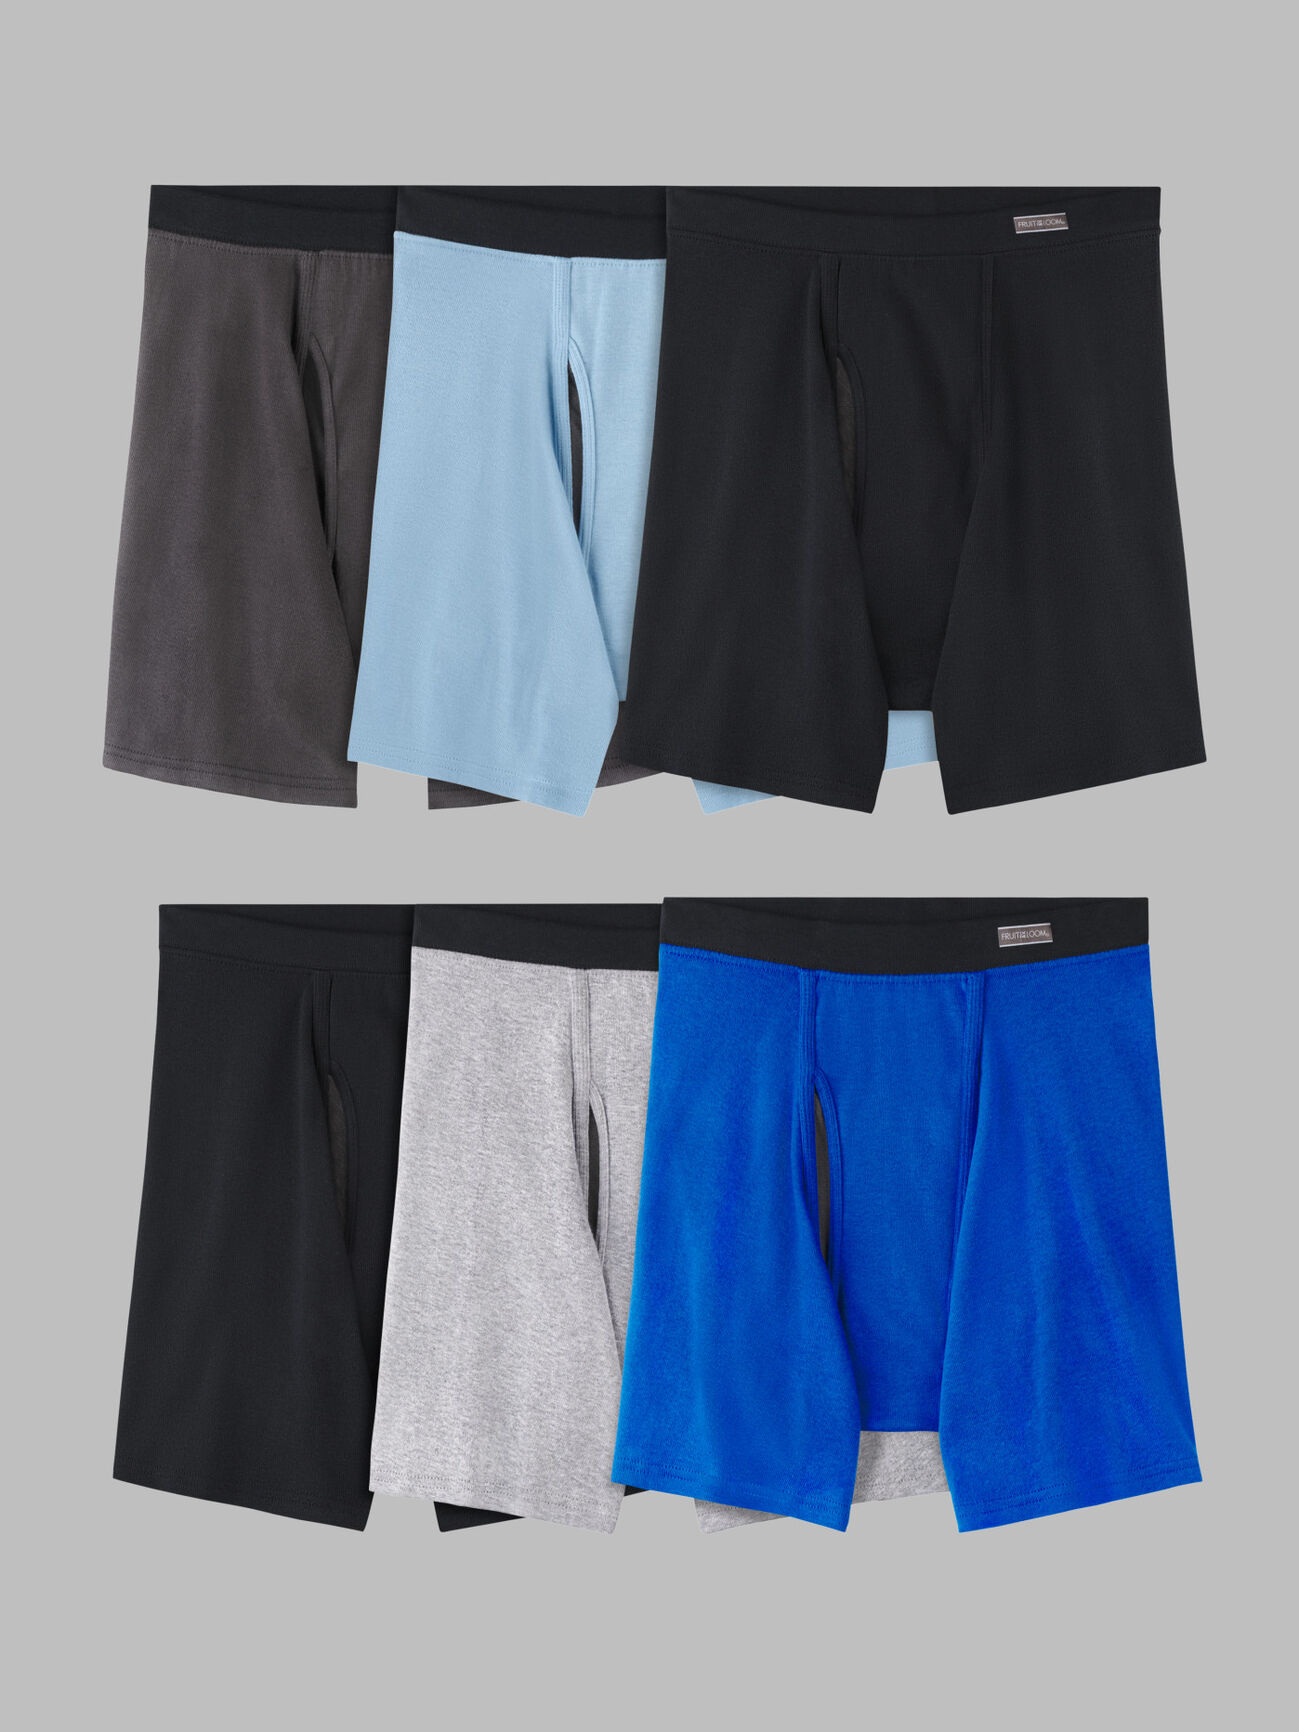 Boxers Pack Of 12 Men's Woven Boxer Shorts Cotton Rich Comfort Fit  Underwear